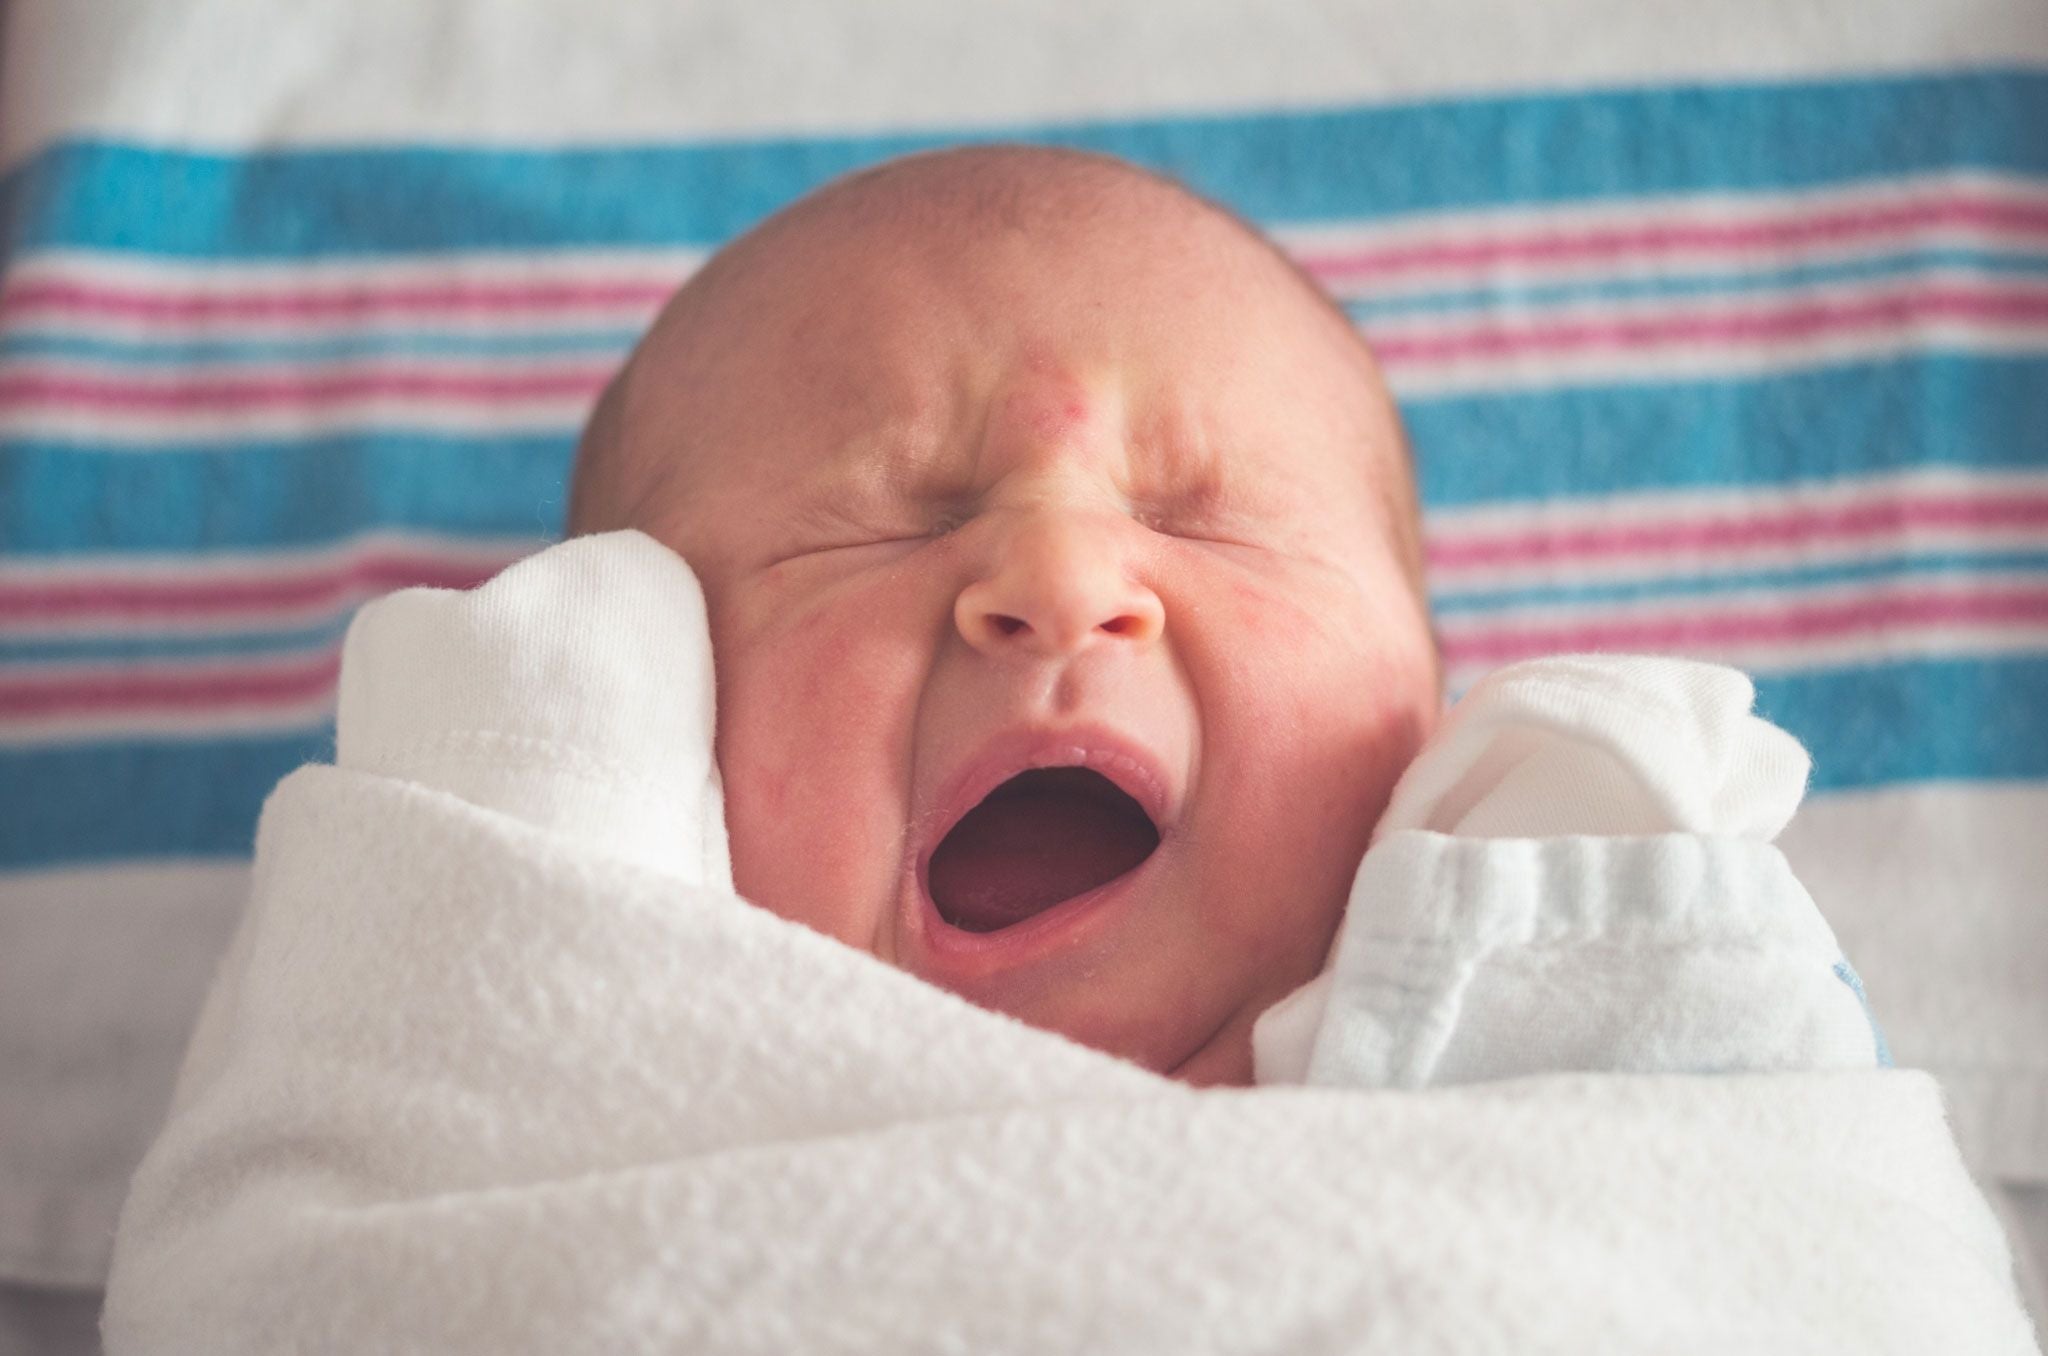 Wanneer moet geboorte doorgeven aan mijn werkgever? – babywatcher.nl